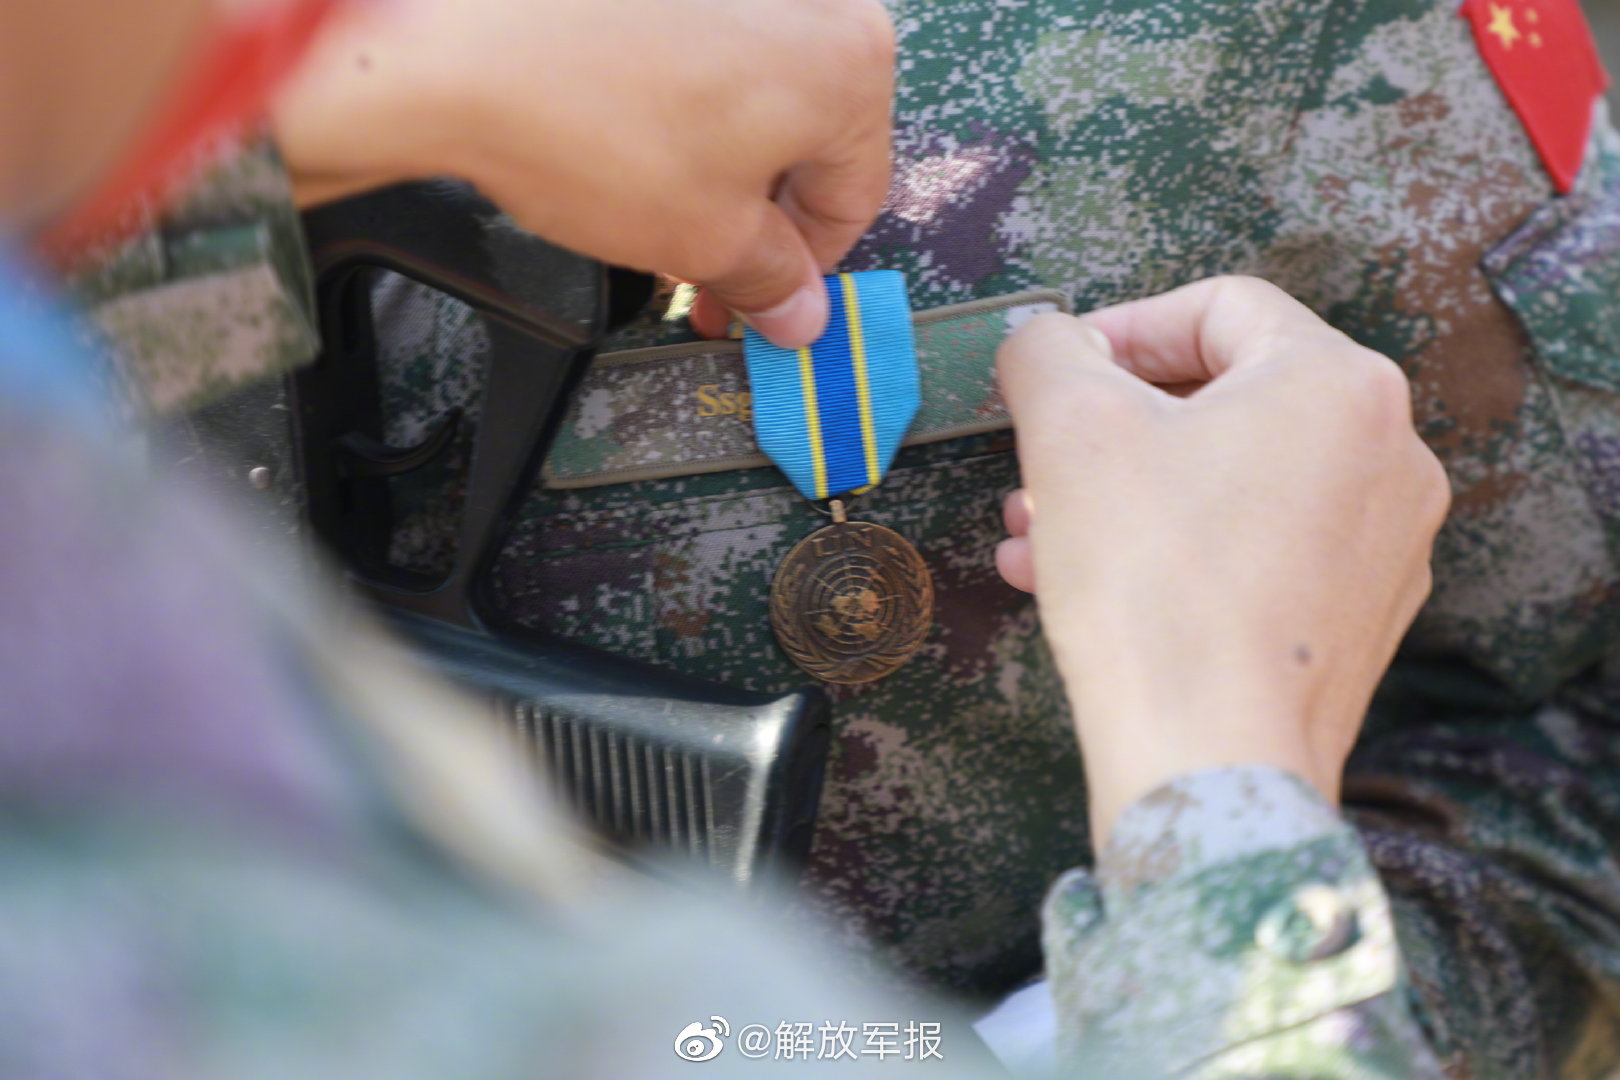 中国维和部队勋章图片